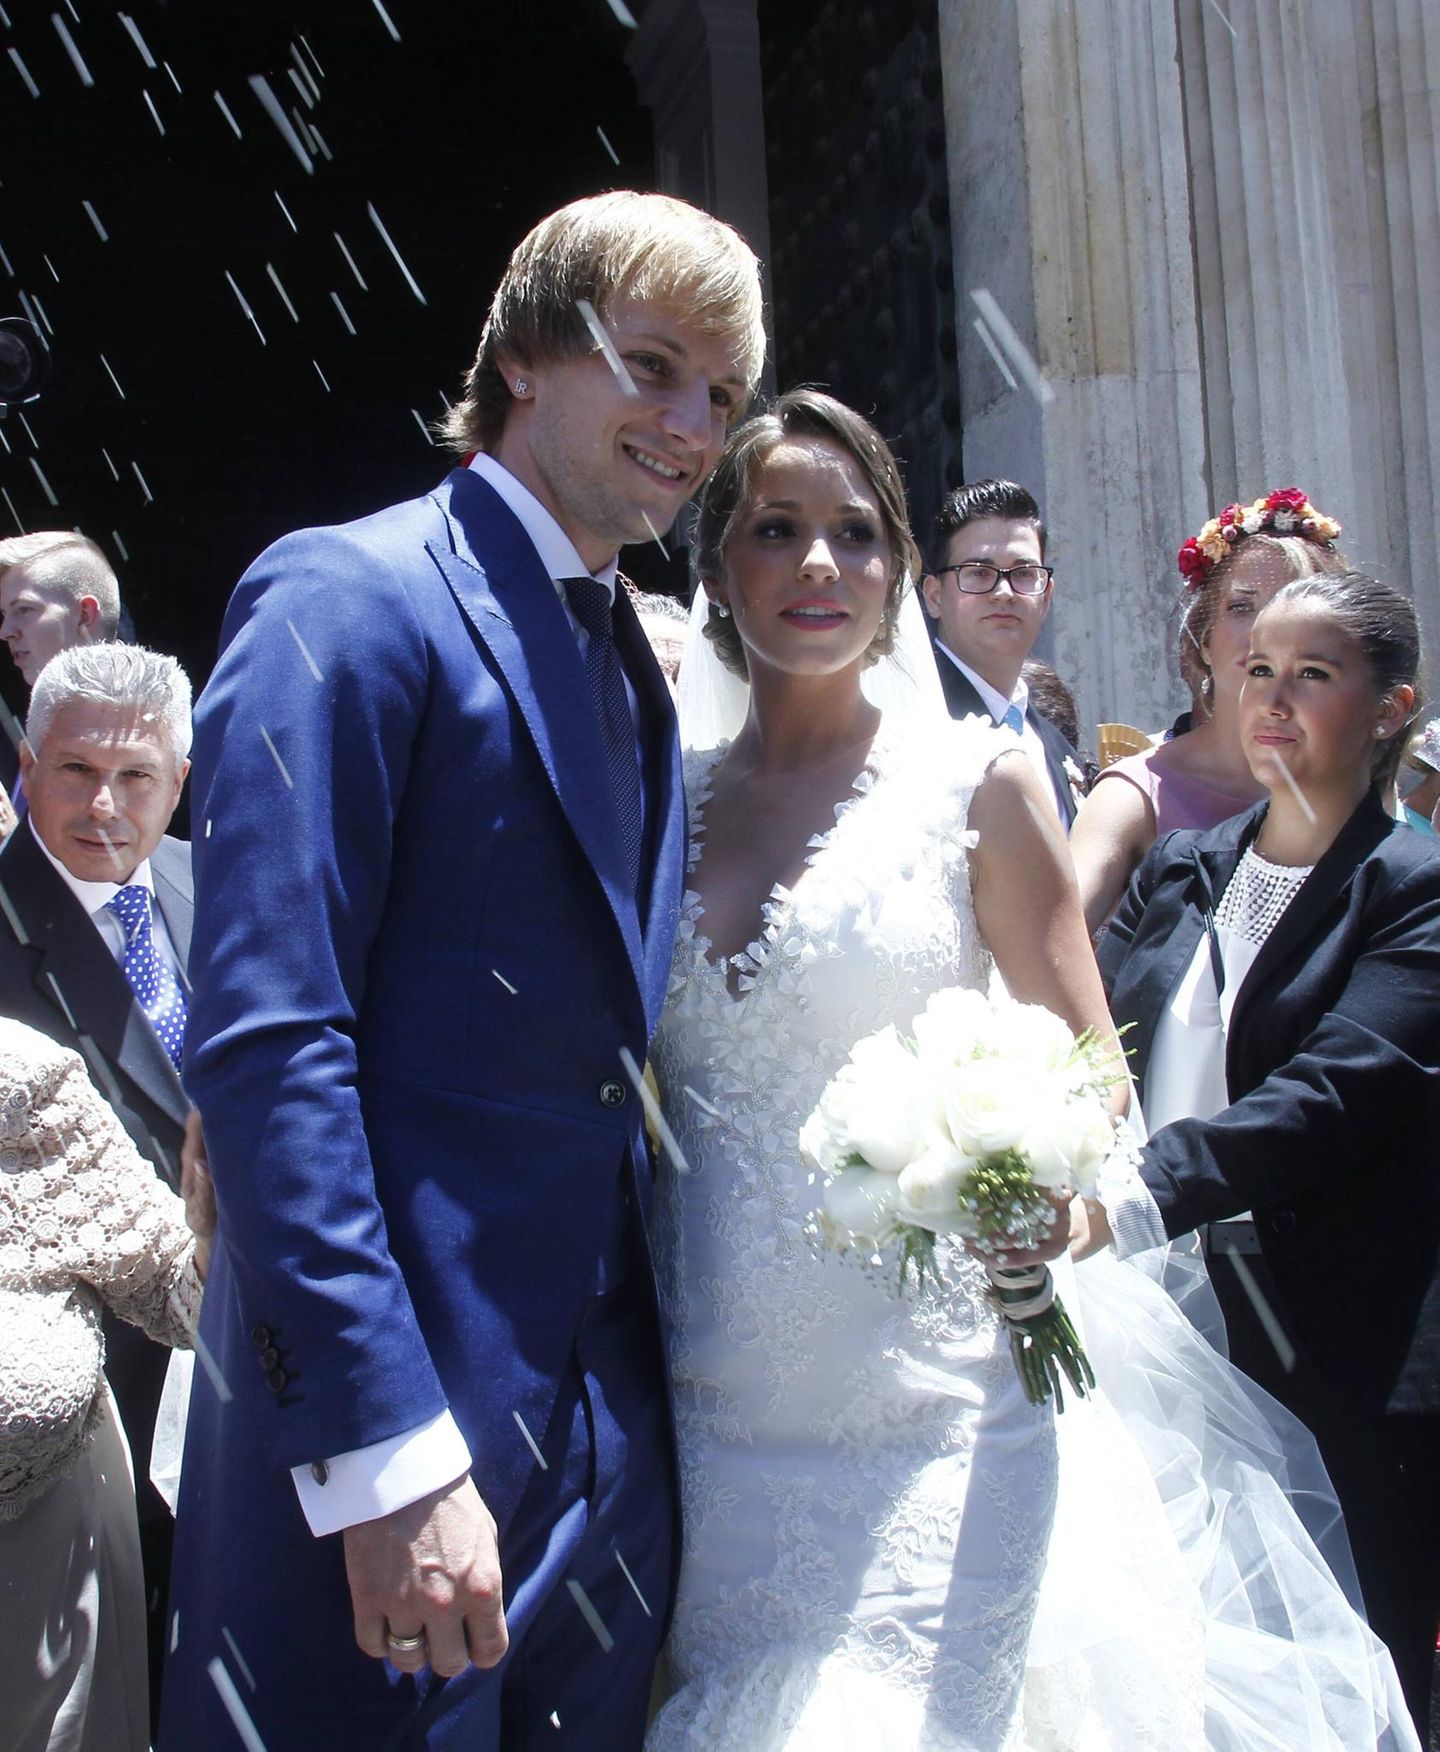 Traumhochzeit in Sevilla: Ivan Rakitic vom FC Barcelona heiratet seine Freundin Raquel.